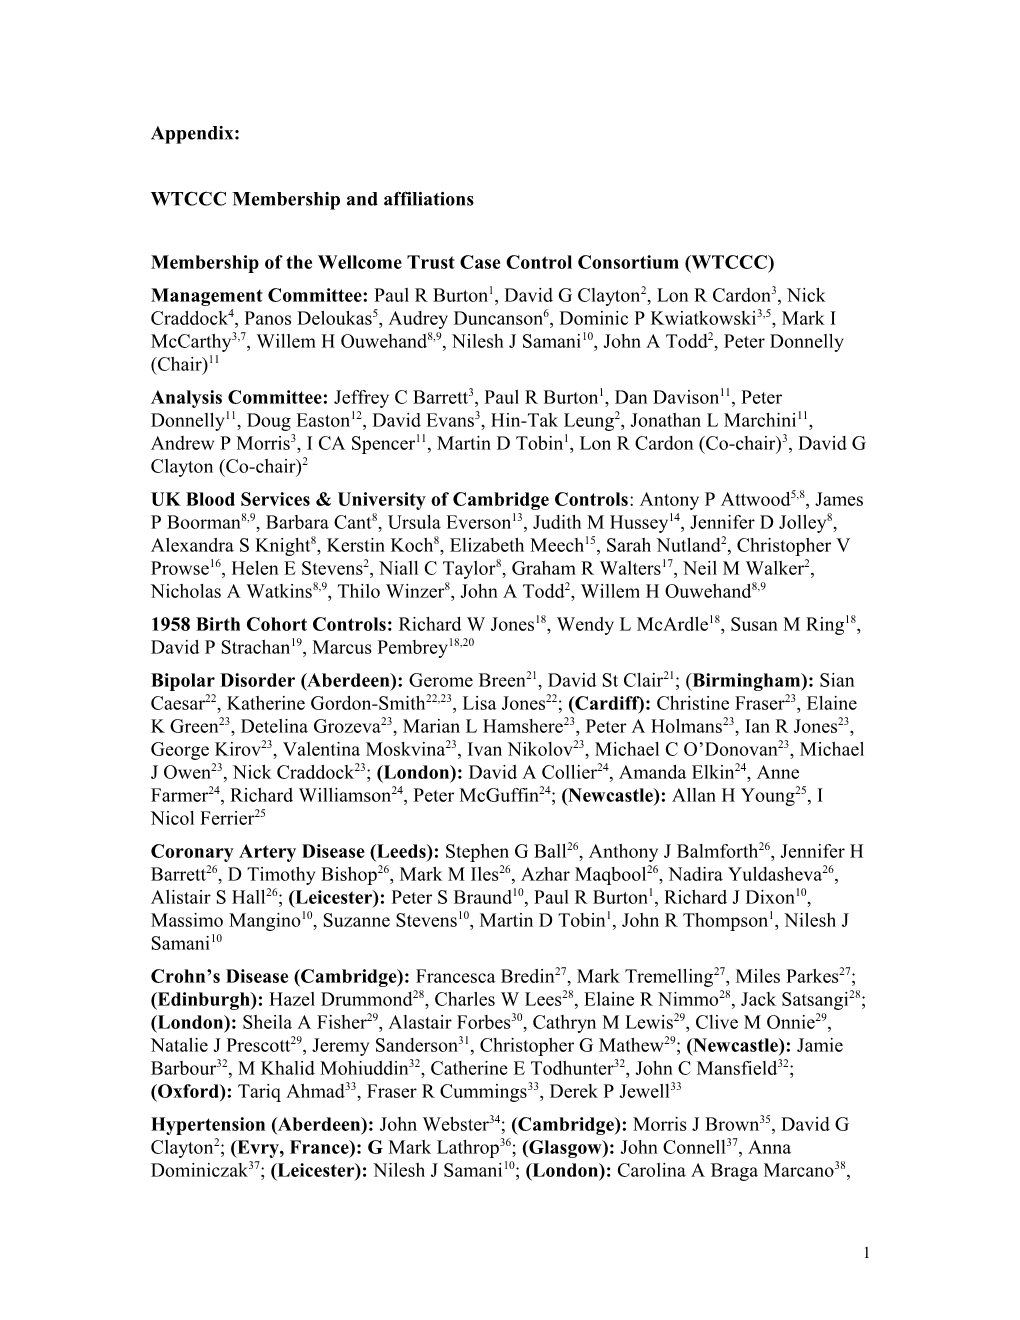 Appendix A: WTCCC Membership and Affiliations